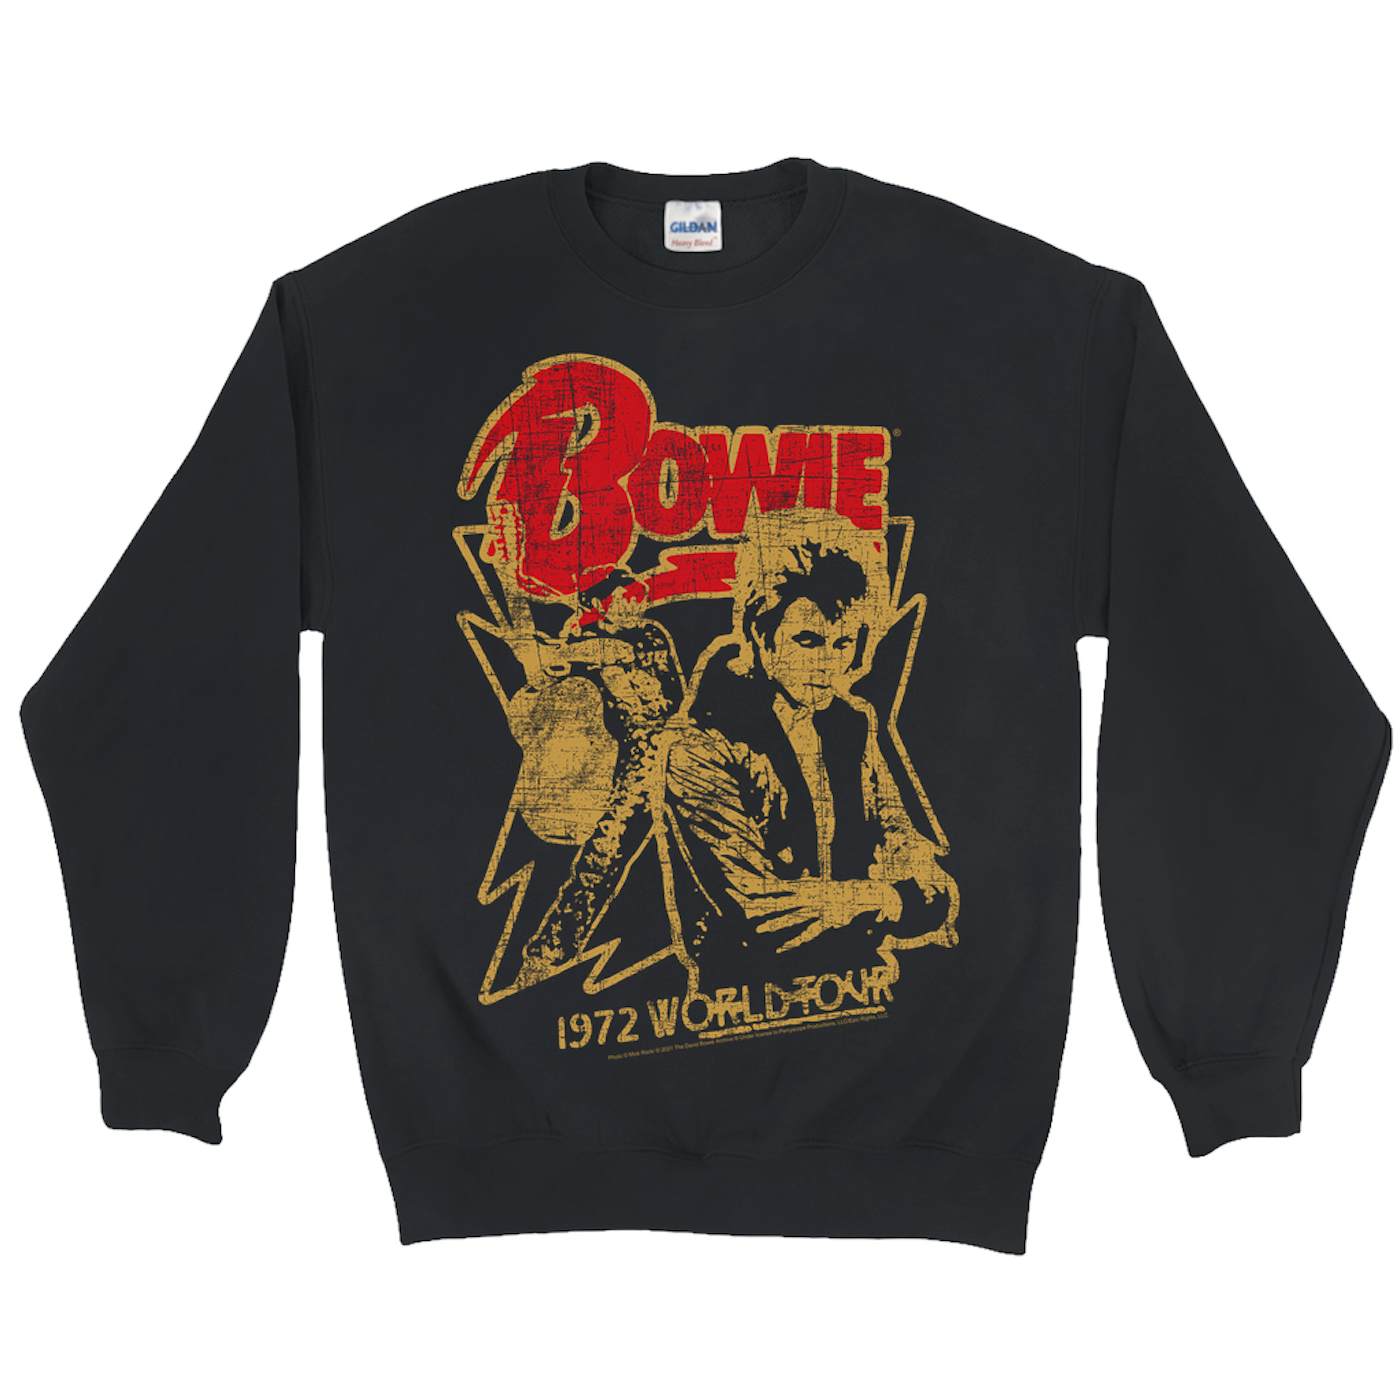 David Bowie Sweatshirt | 1972 World Tour Design Distressed David Bowie Sweatshirt